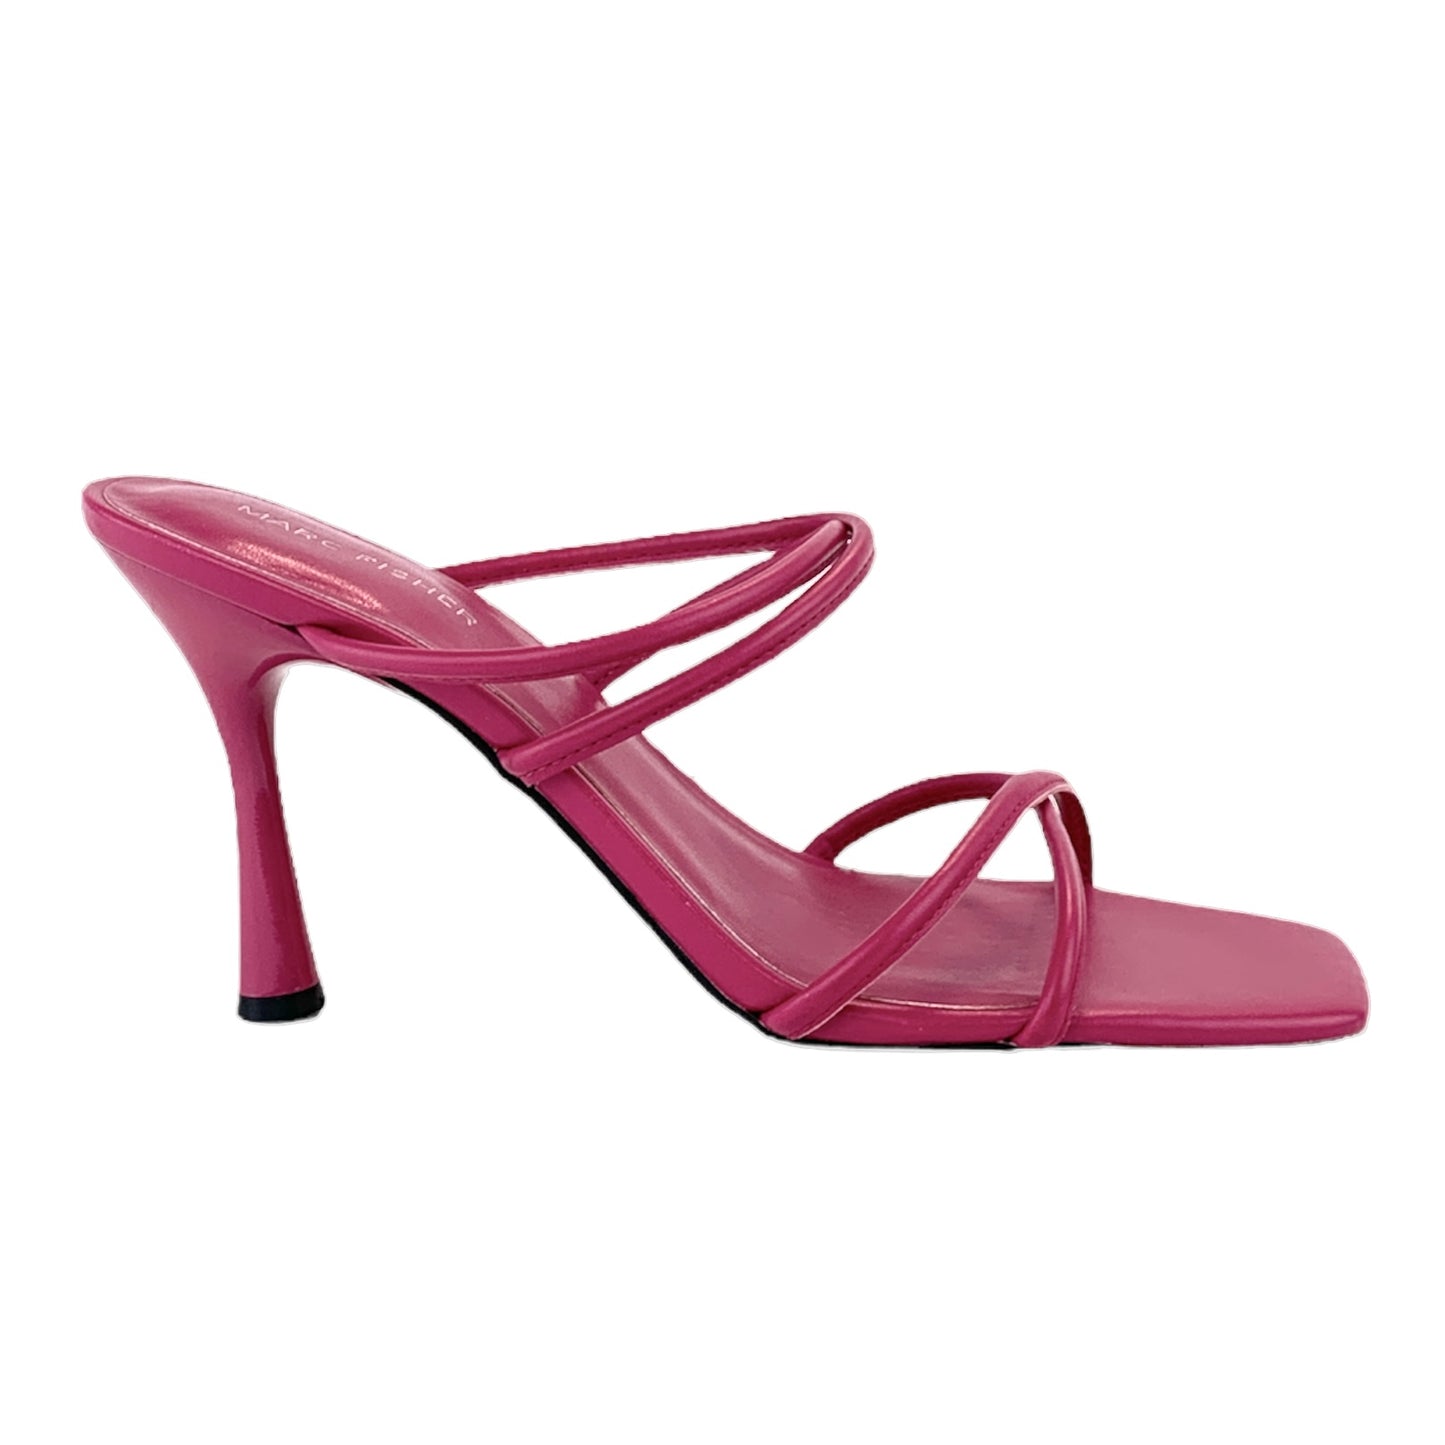 FASHYN-R Crisscross Straps Slip On Pink Size 9M Heed Women's Sandals